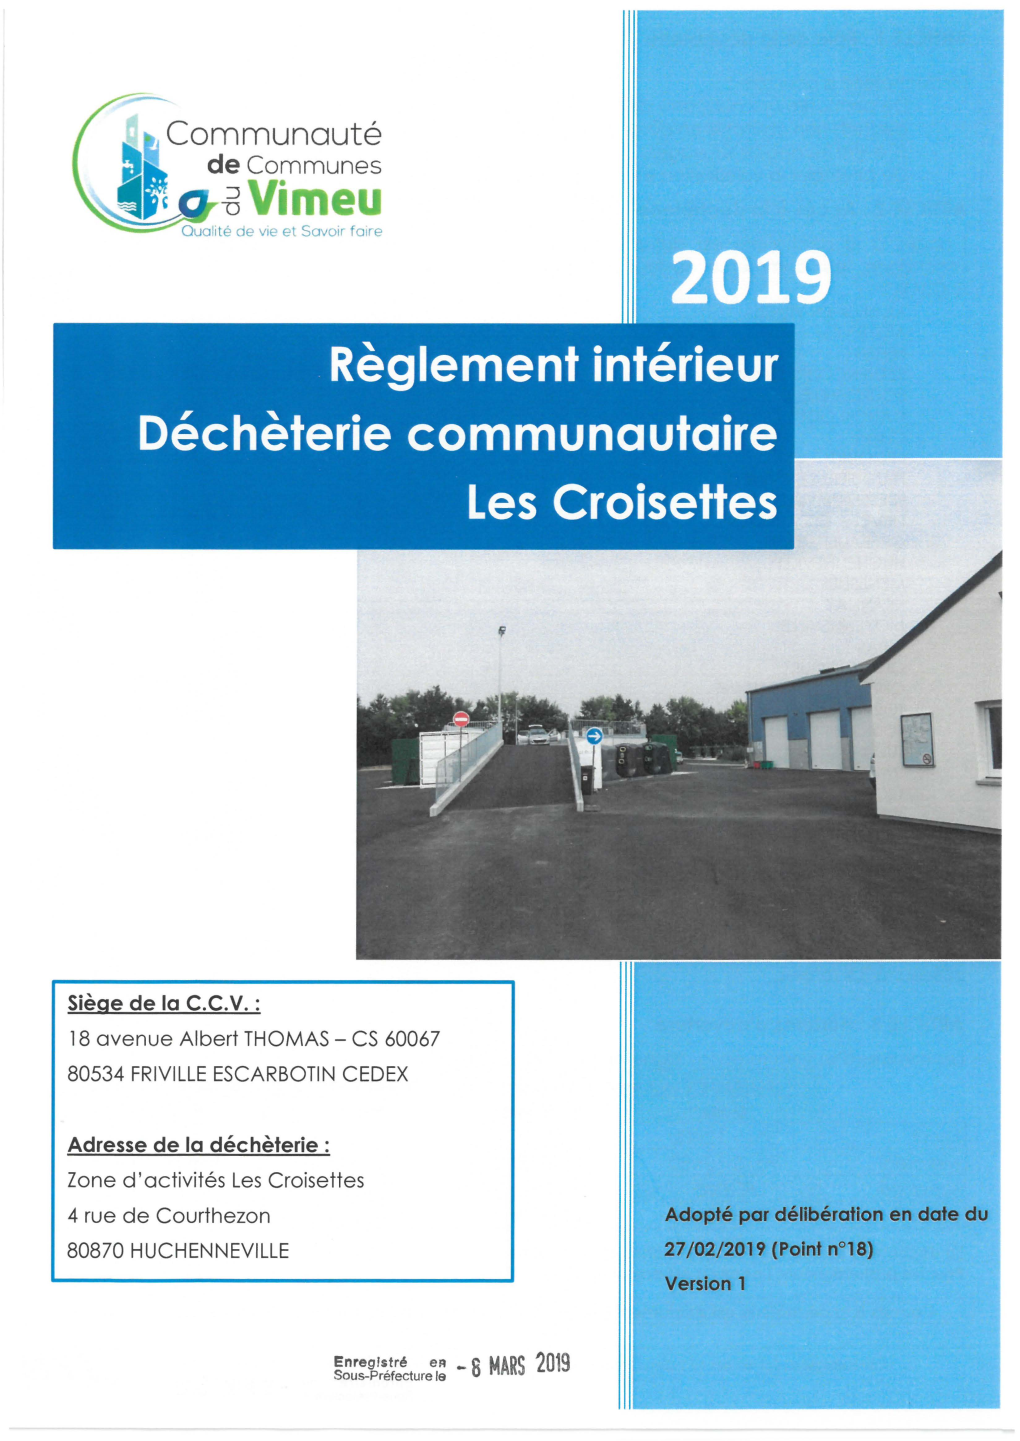 8 MARS 2019 Sous-Prefecture Le ARTICLE 1 : Rôle De La Déchèterie